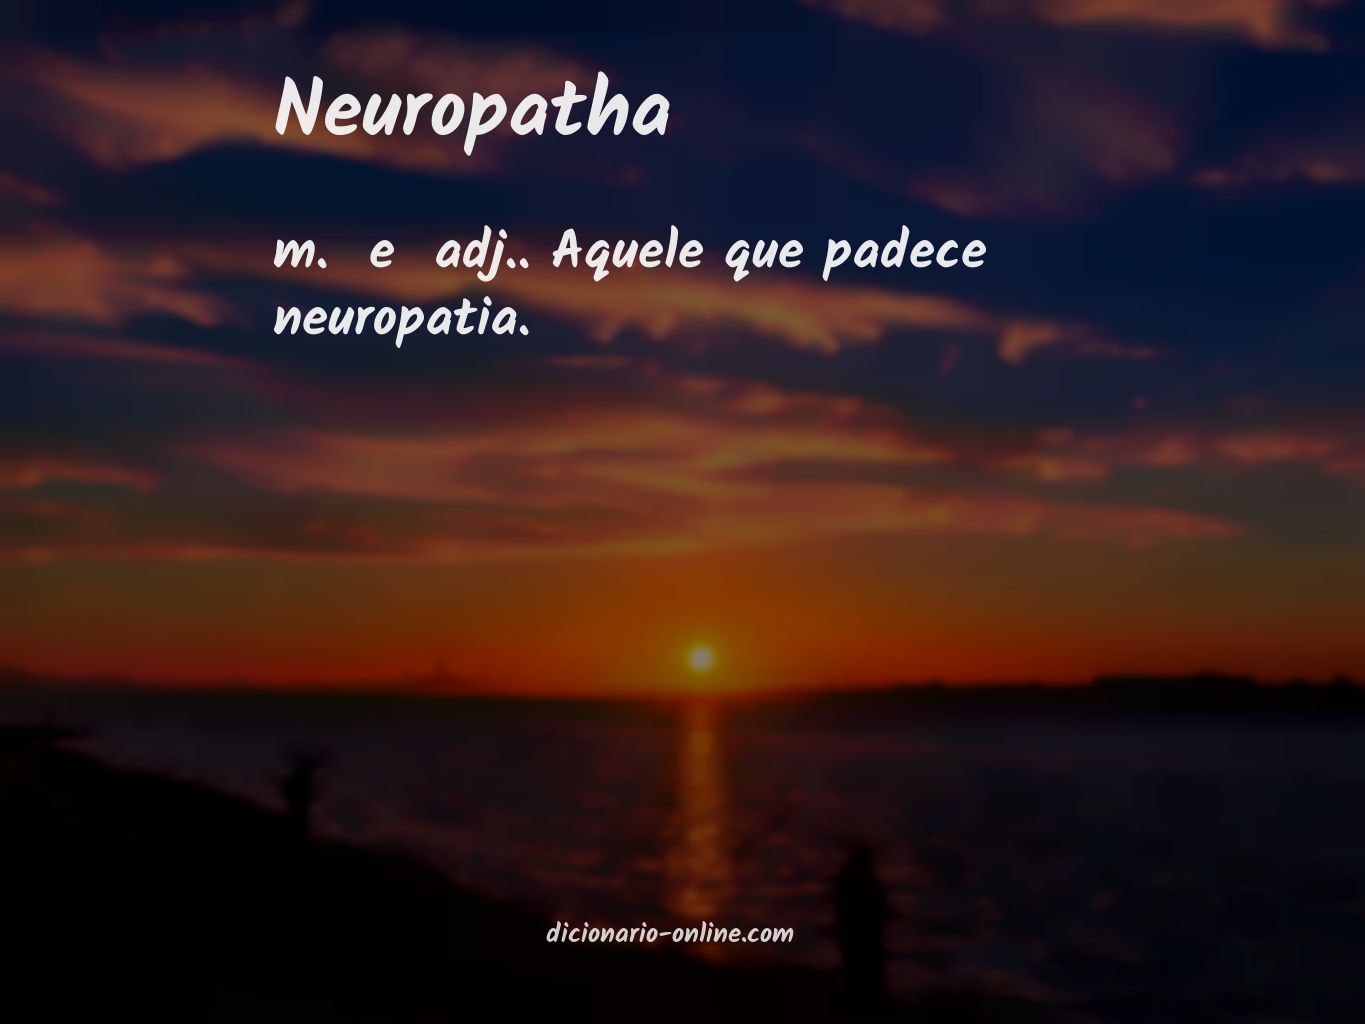 Significado de neuropatha